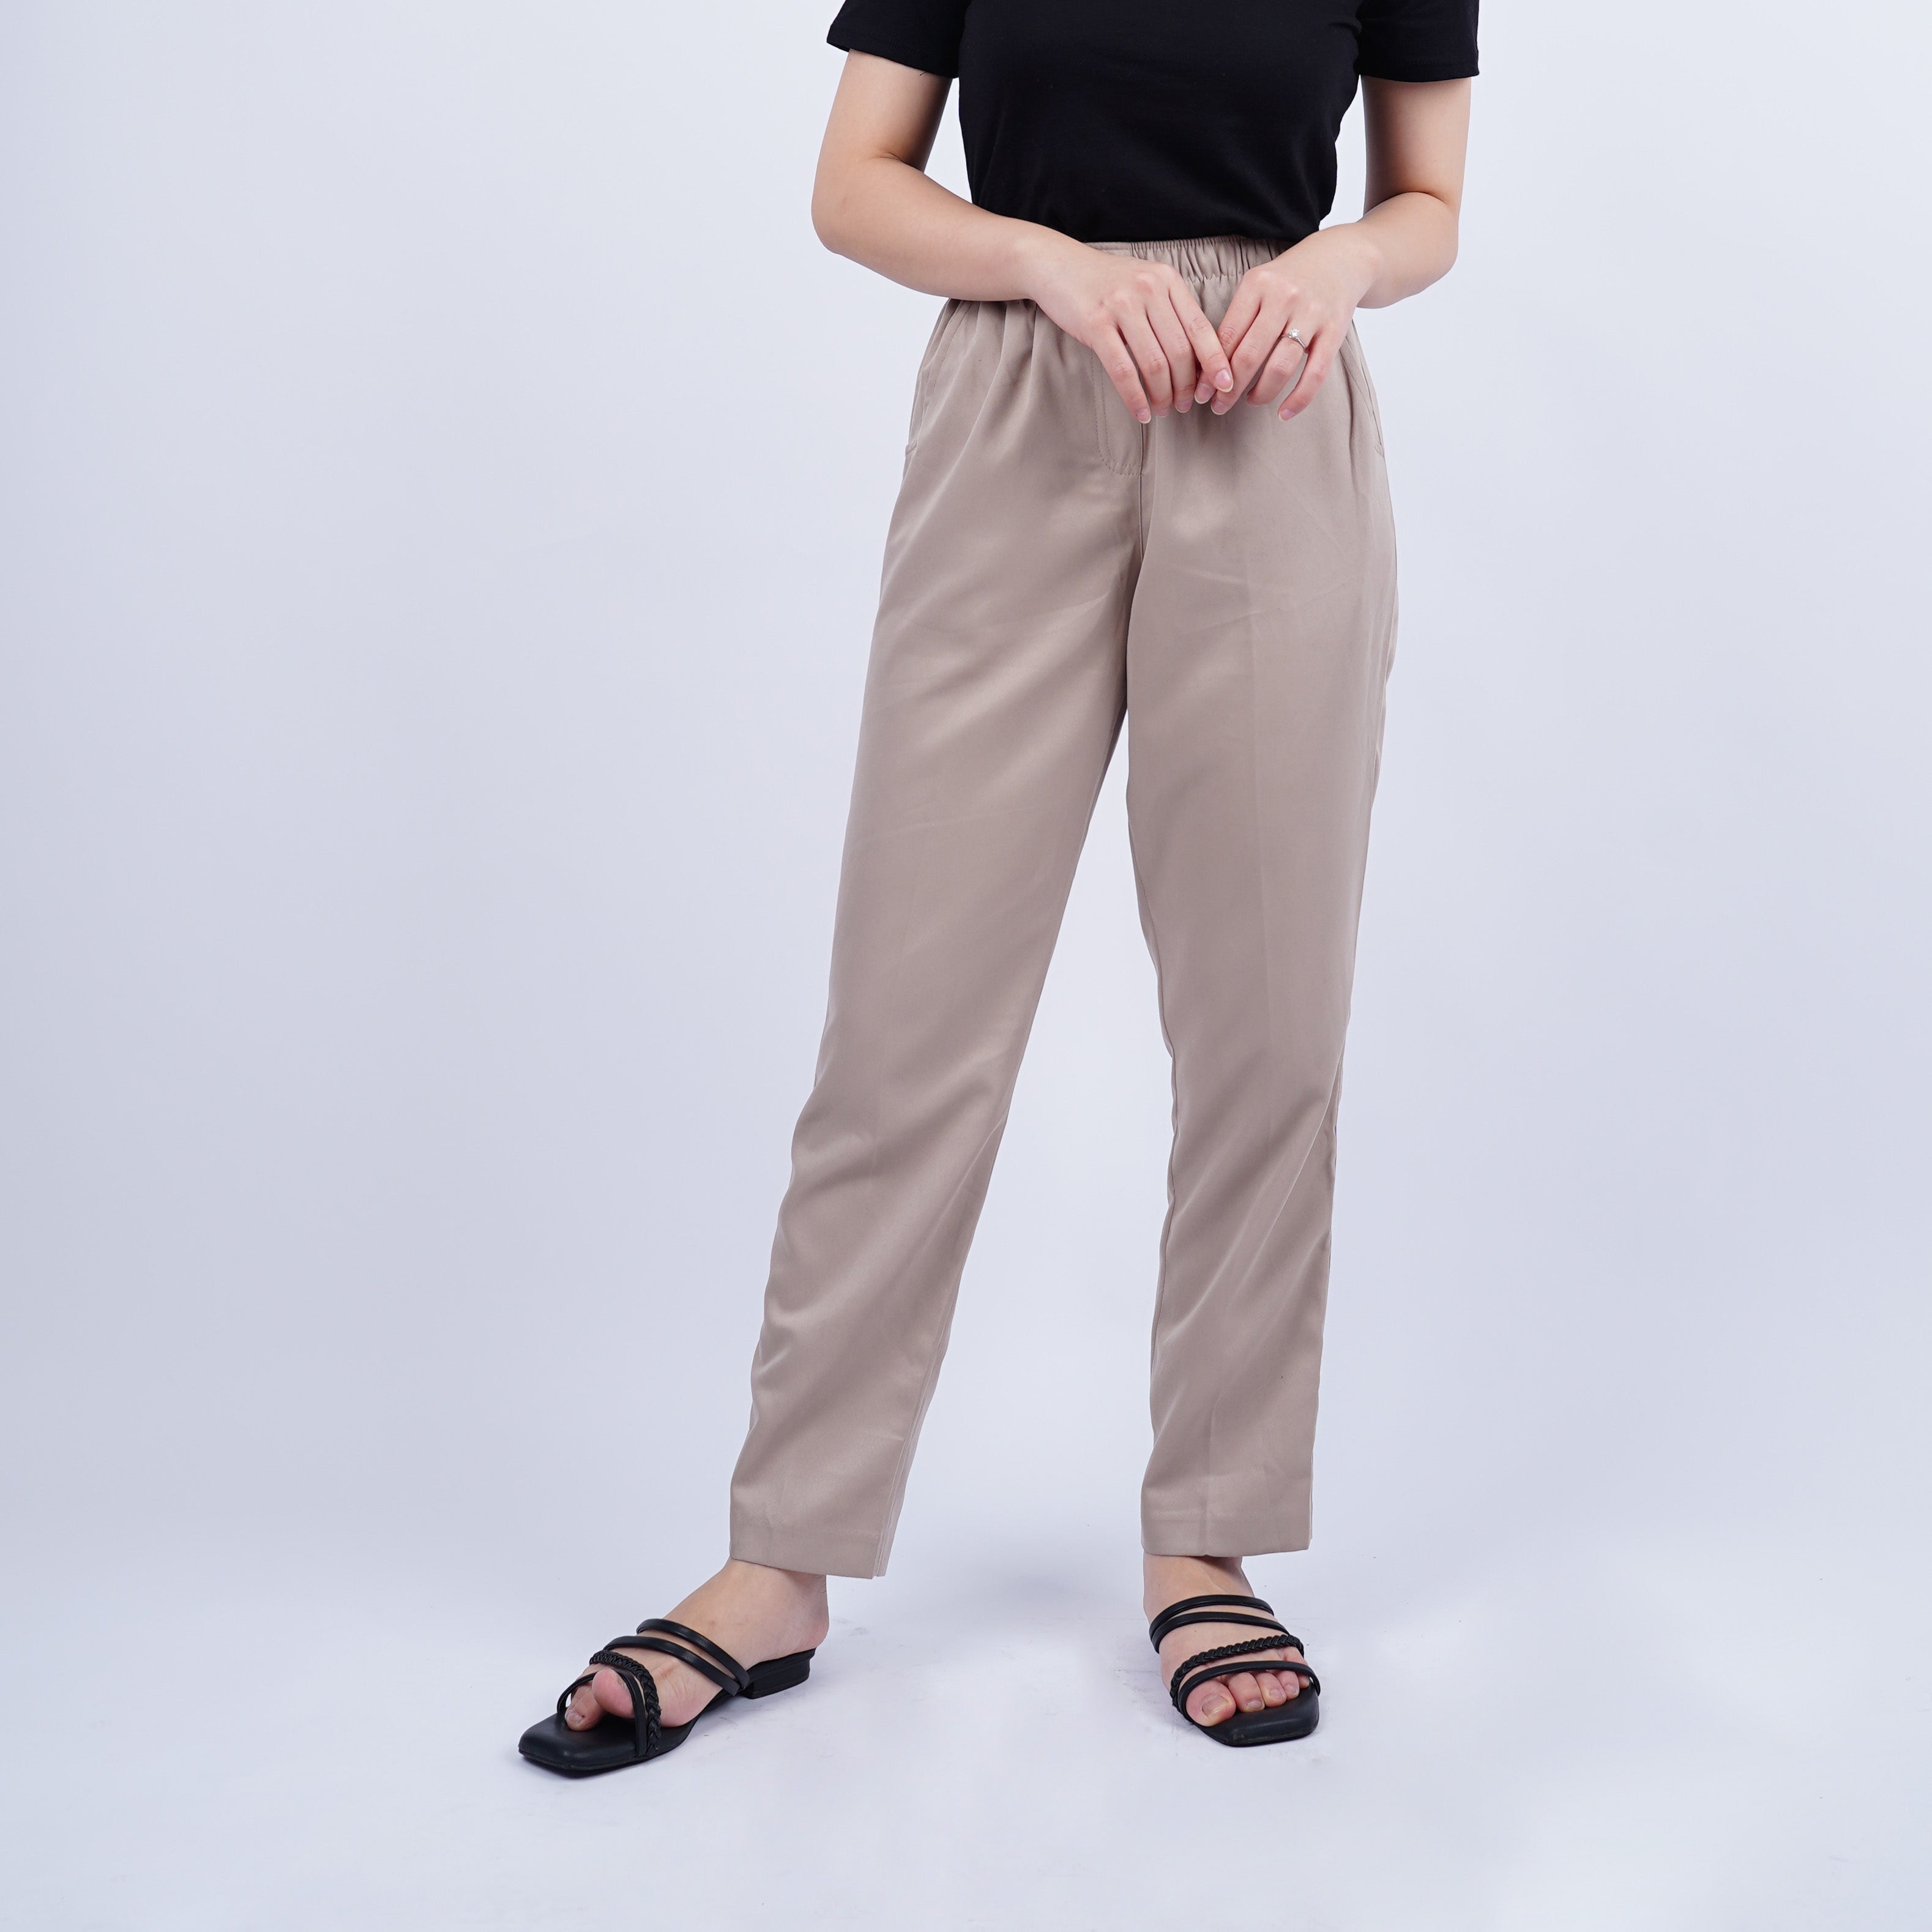 Celana Panjang Wanita Relaxed Fit Straight Pants [CG-ALIA 02]